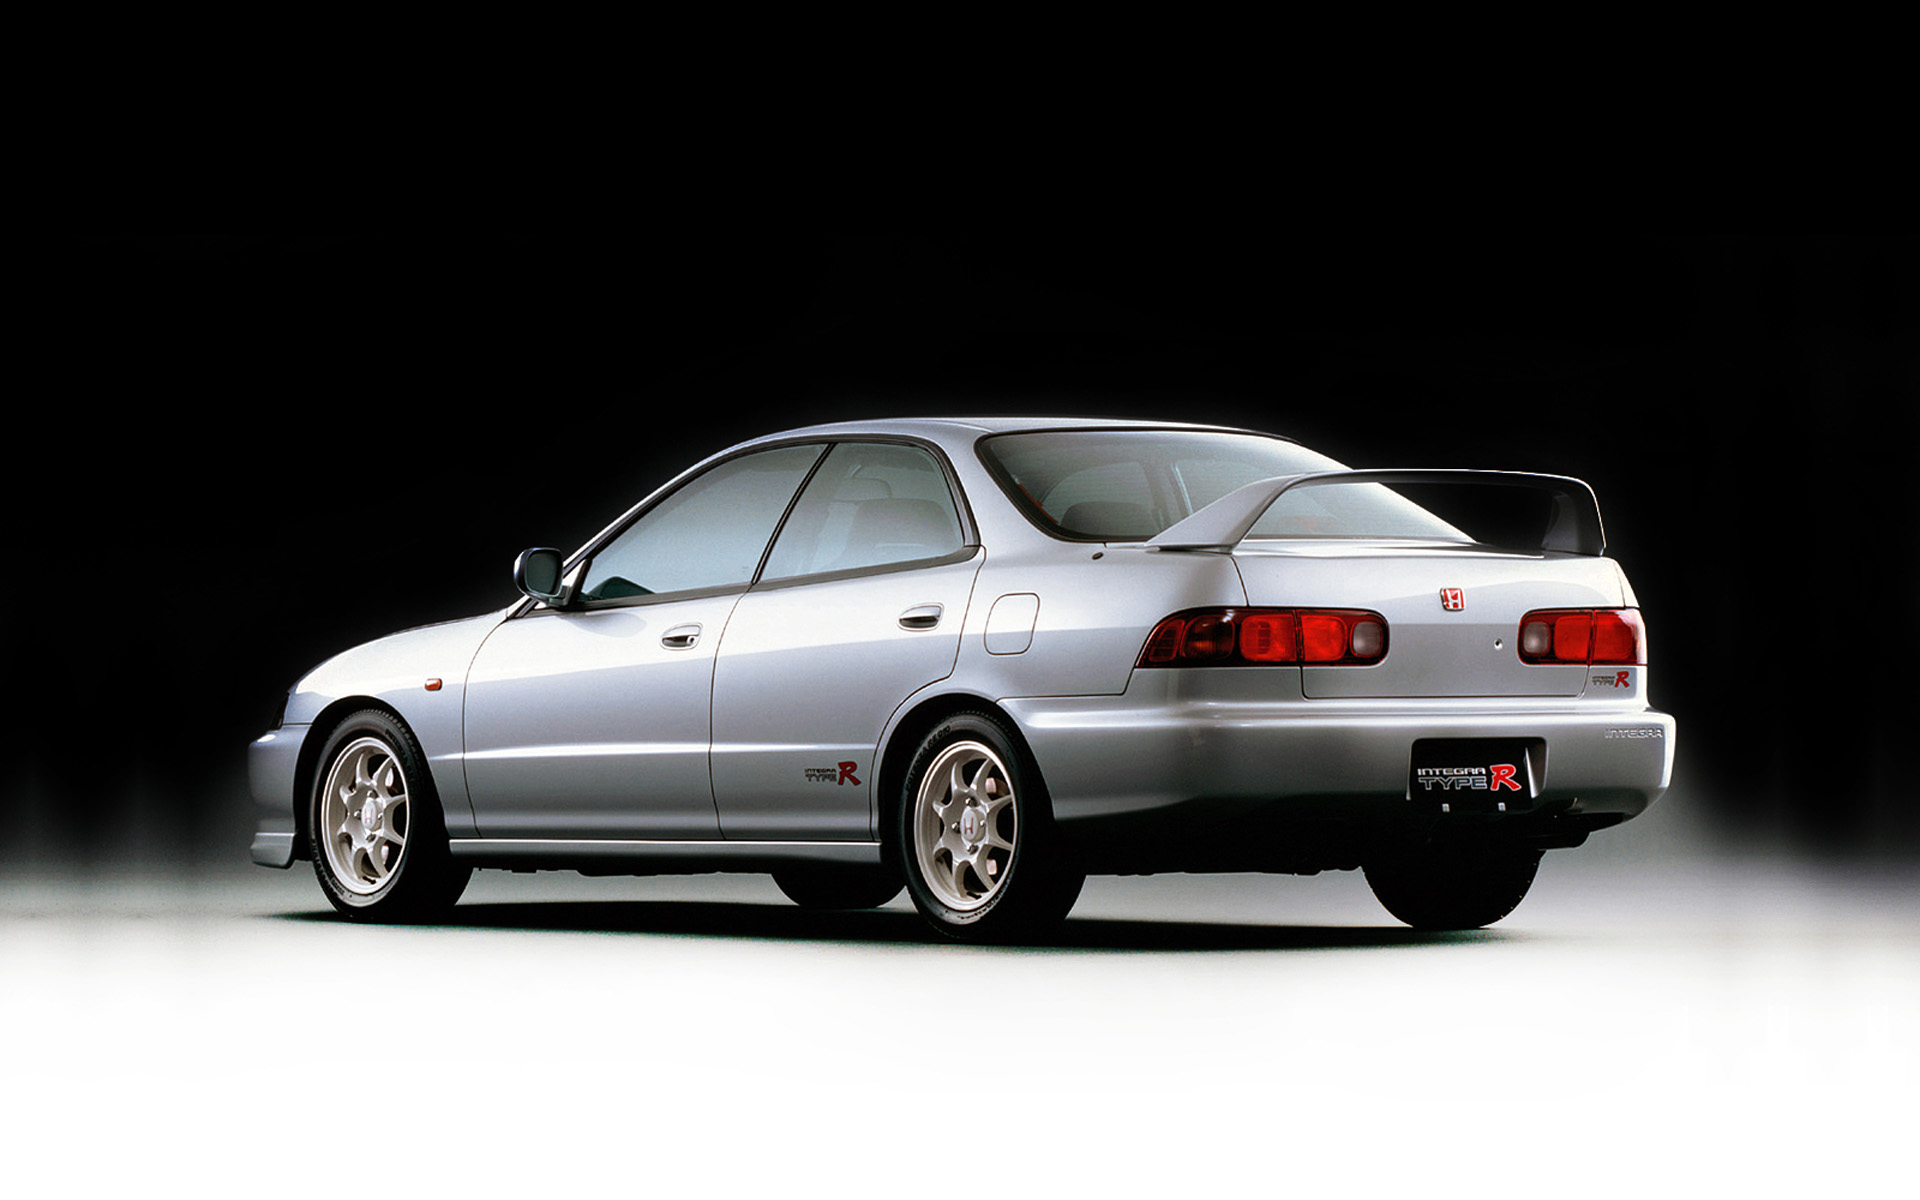  1995 Honda Integra Type R Wallpaper.